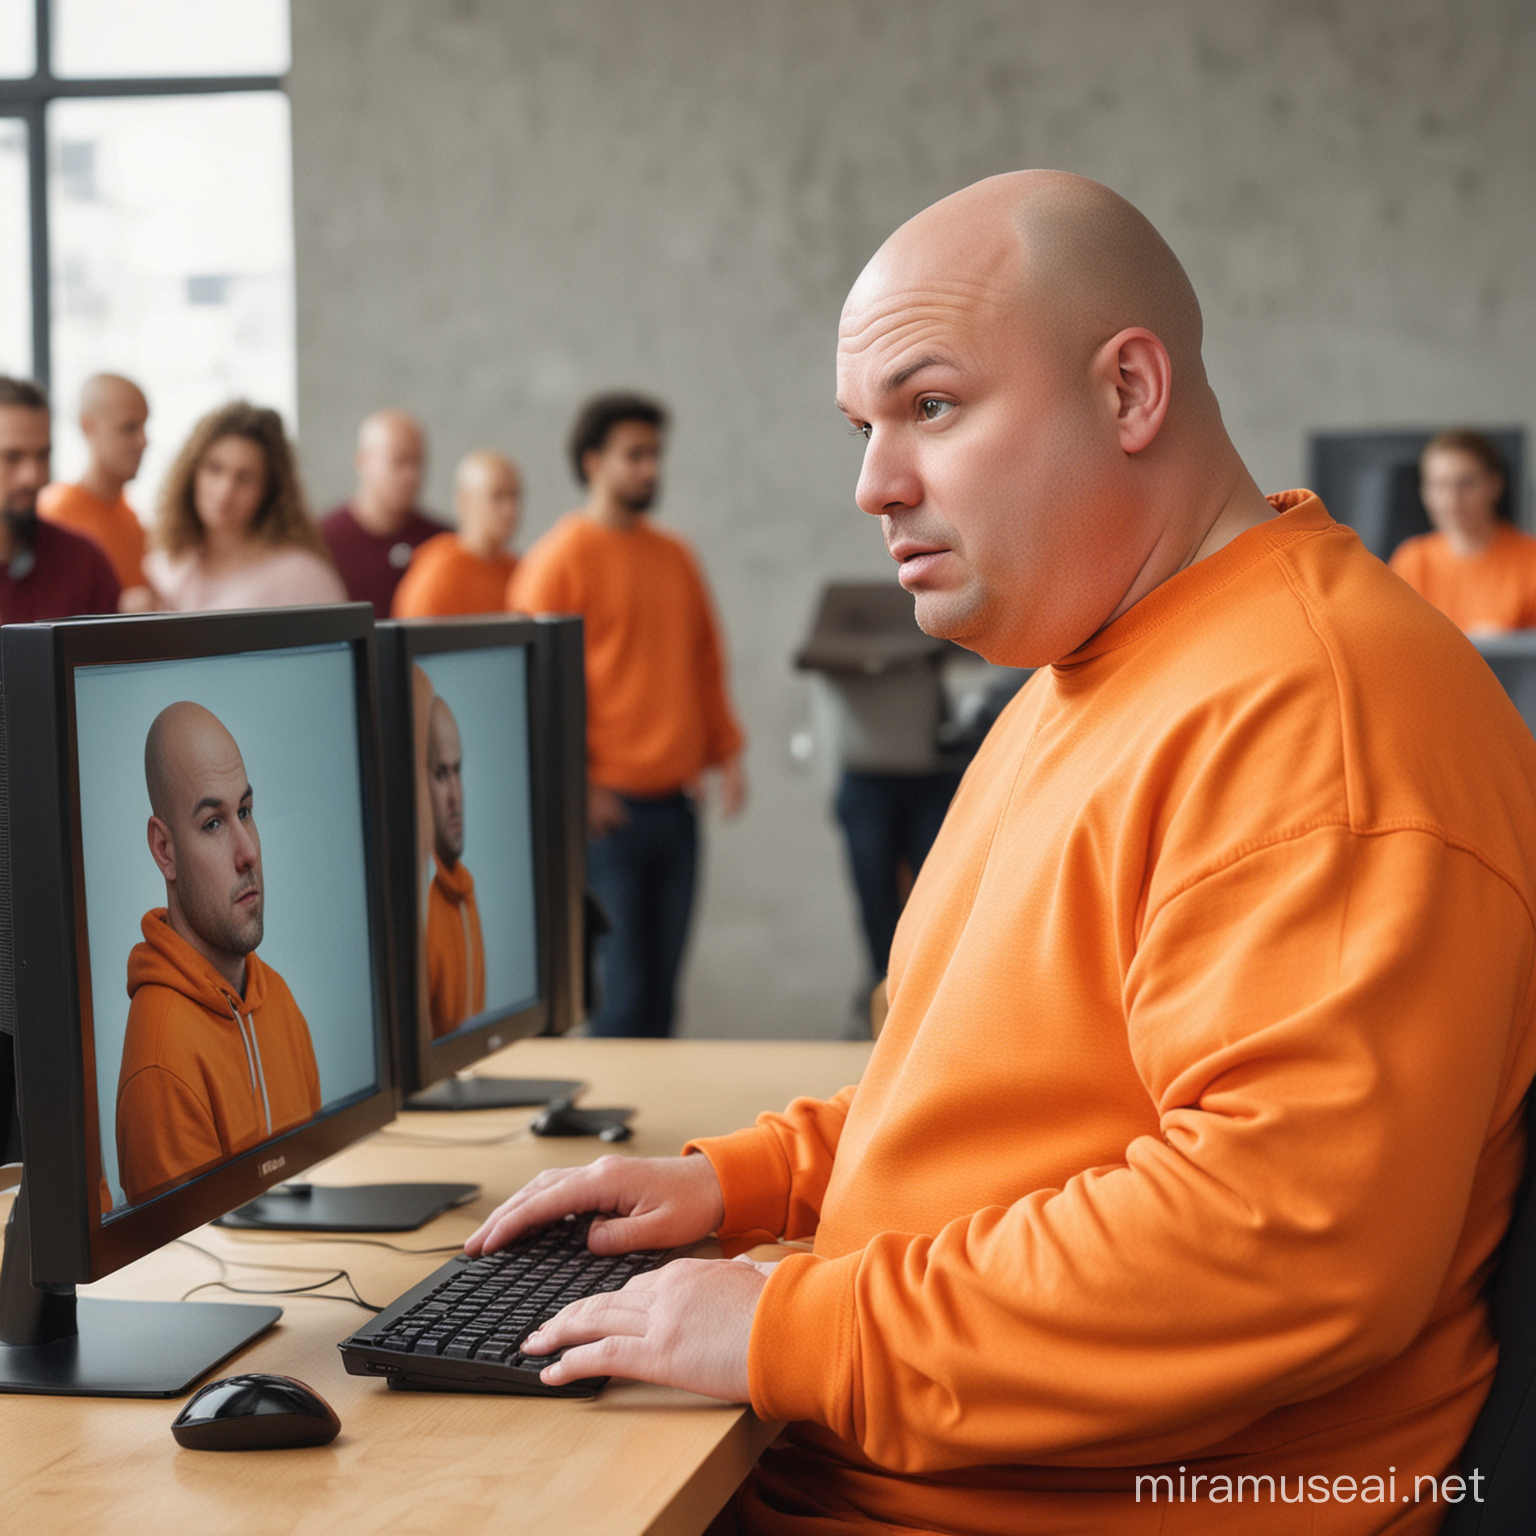 haz a un gordo sin pelo en la cabeza y al frente de un computador con un buso naranja y aparte de eso unas personas saliendo de su computador